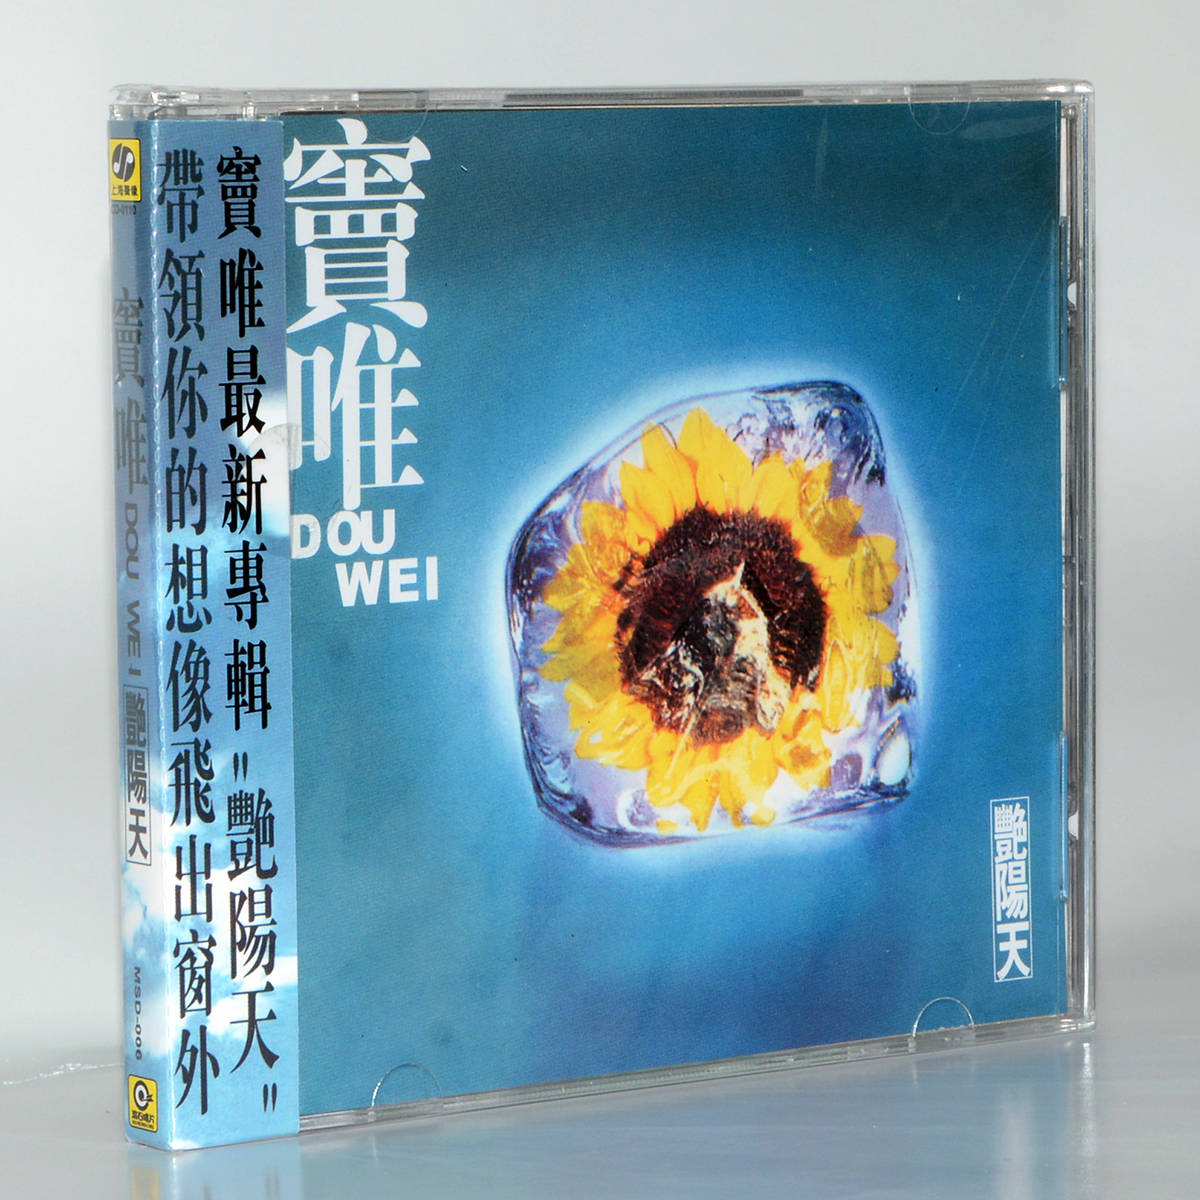 正版唱片上海声像窦唯1995专辑窦唯艳阳天 CD+歌词册碟片